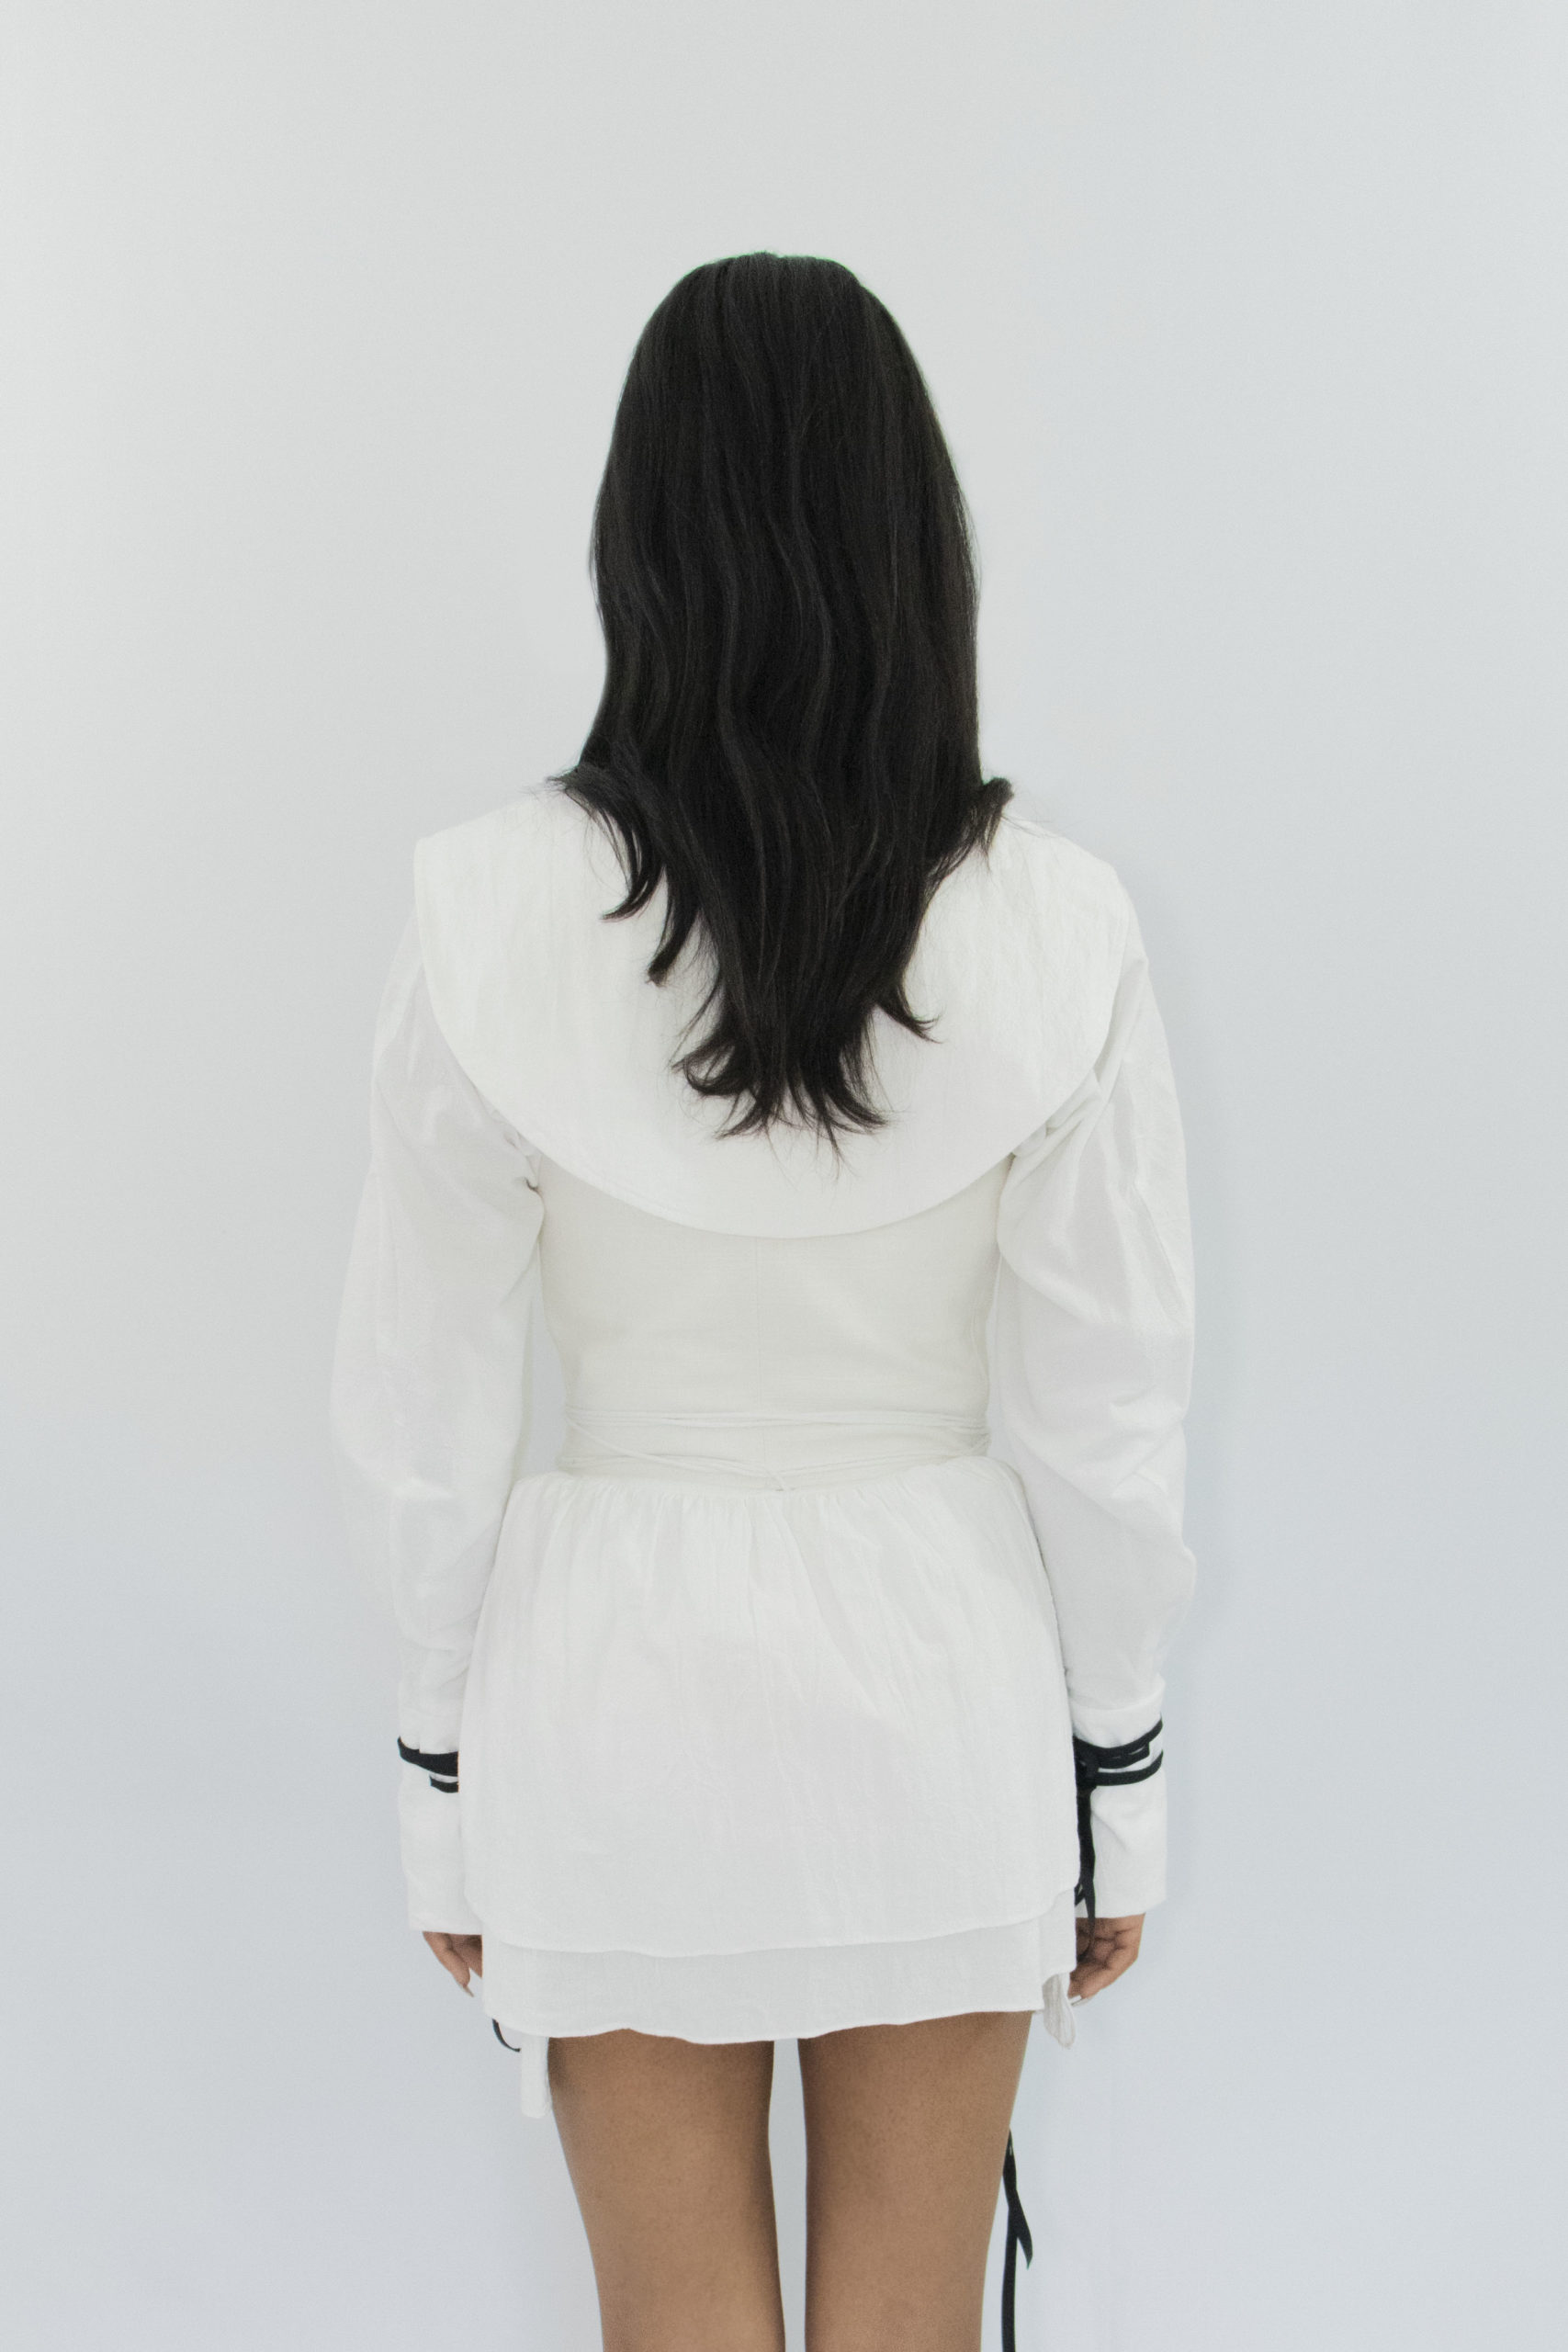 Woman wearing white zero waste cotton corset